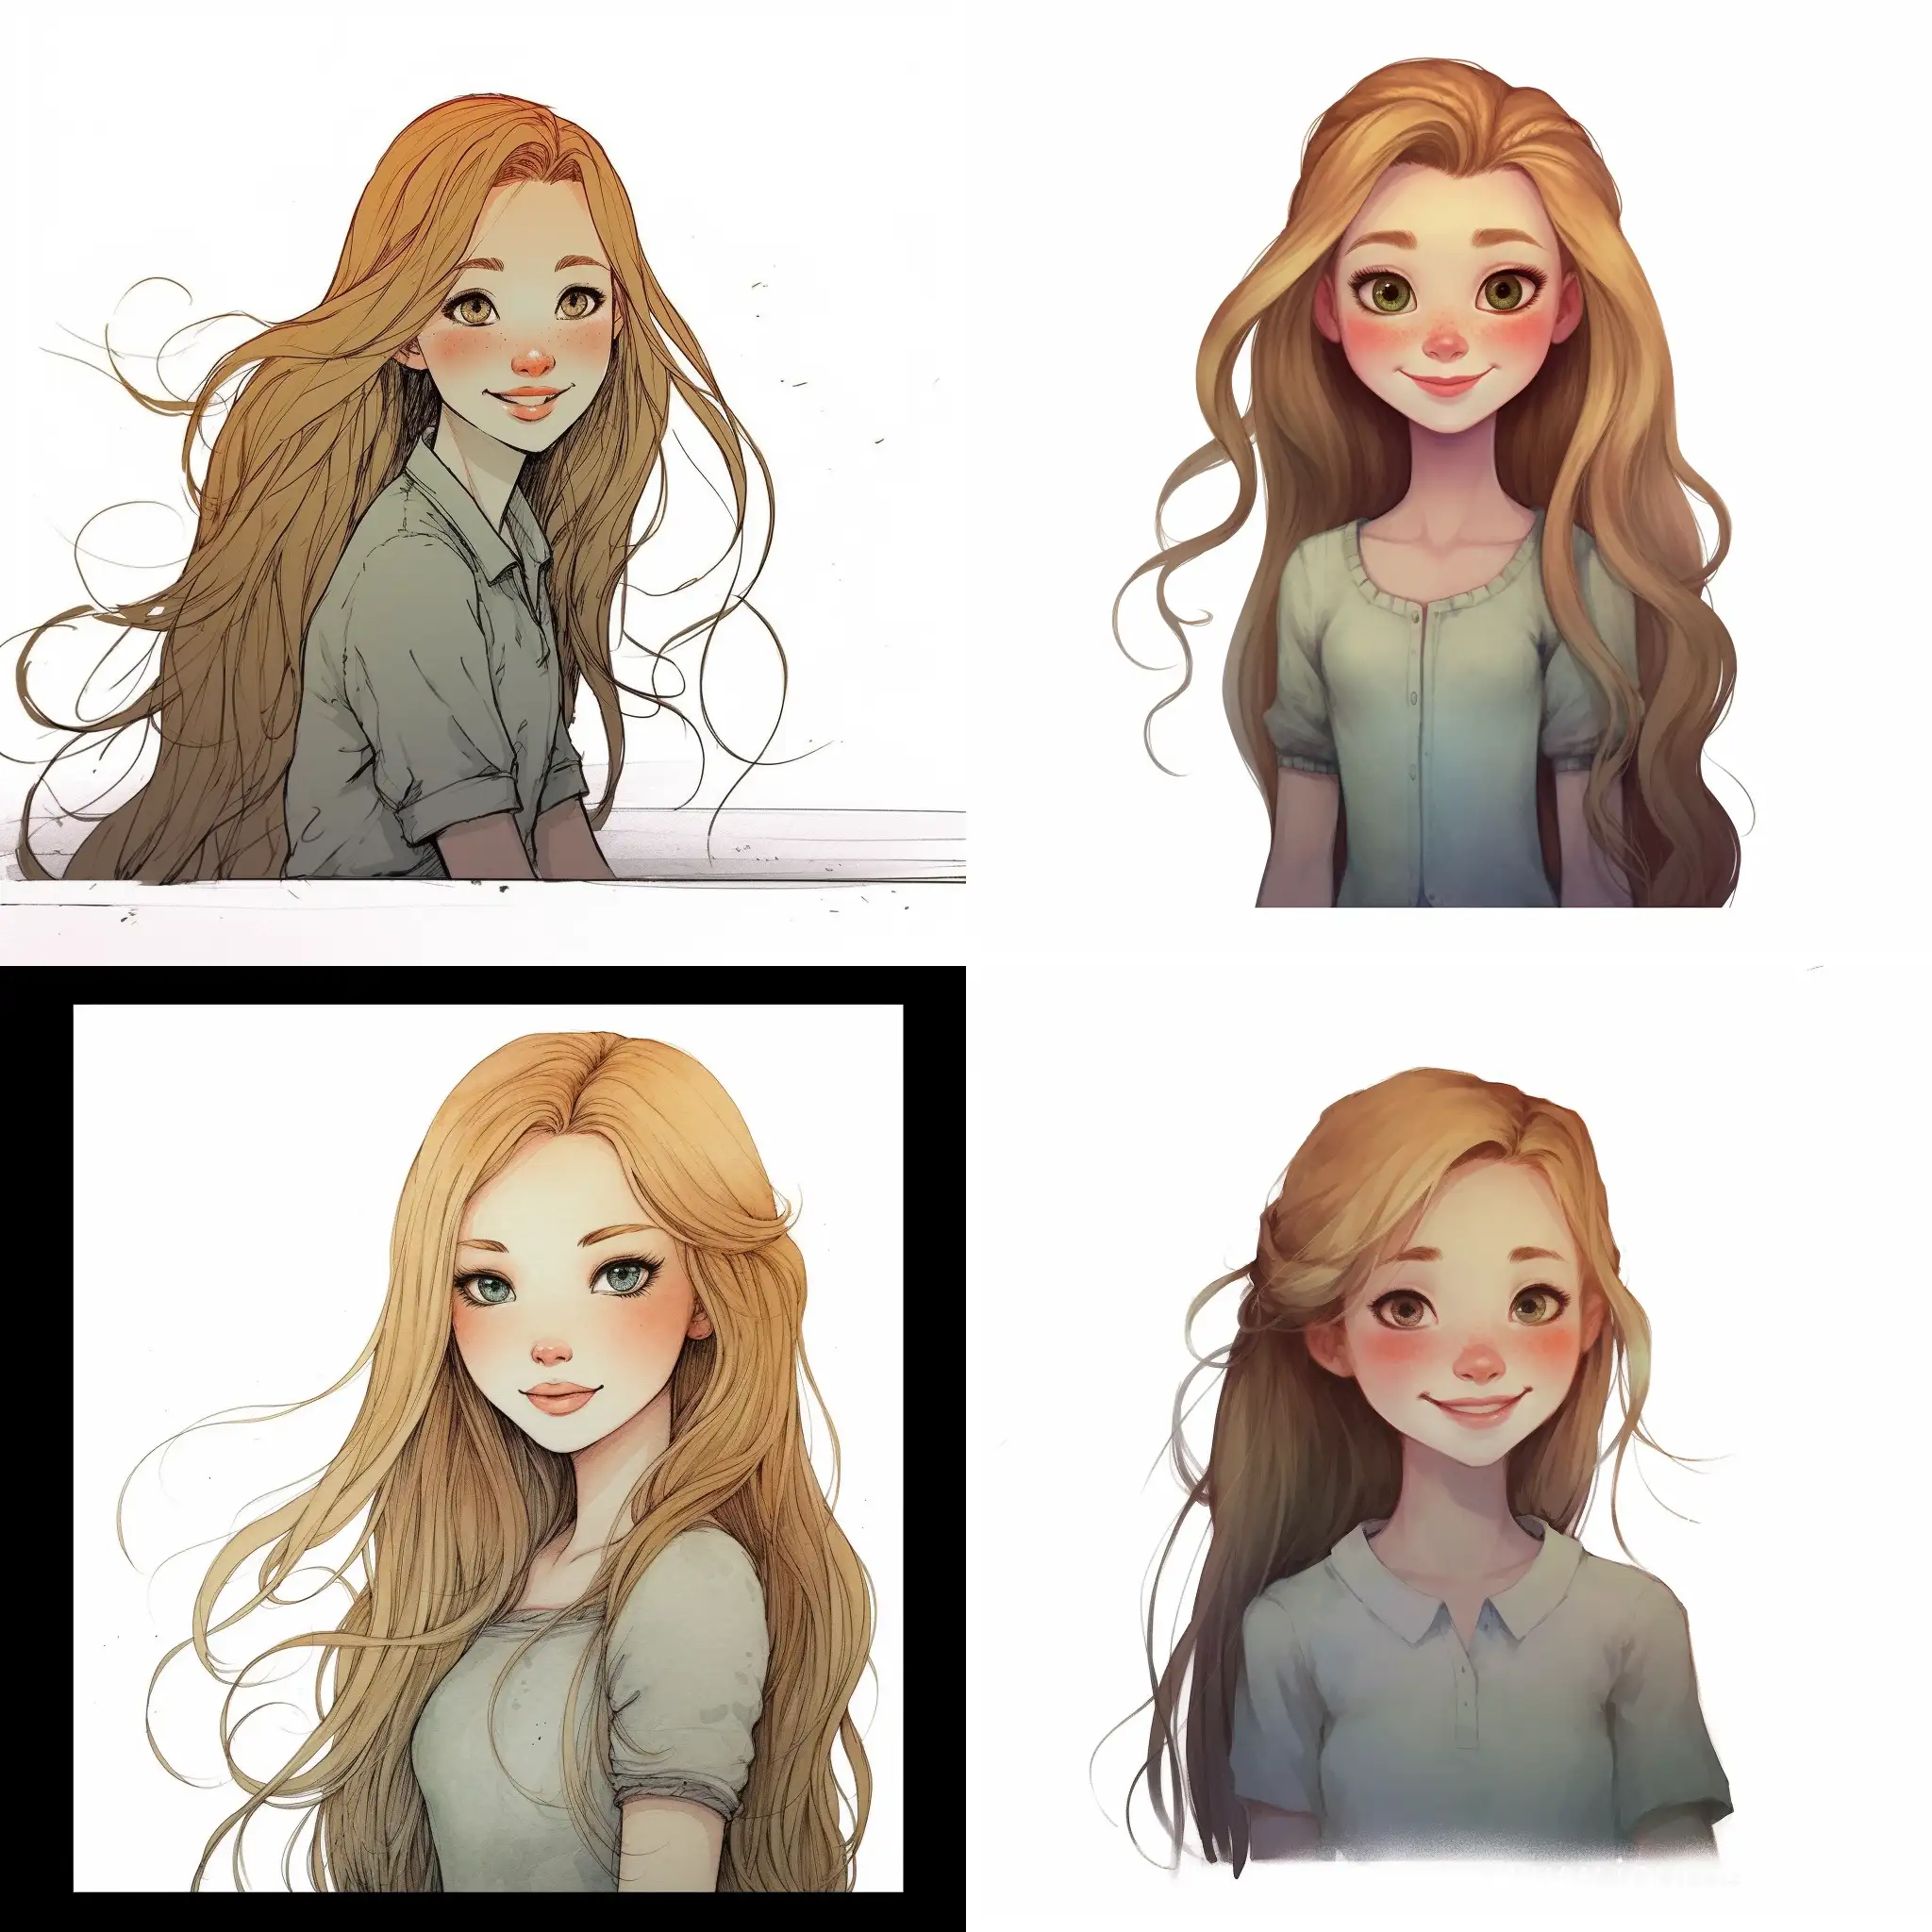 Joyful-Freckled-Blonde-Girl-Smiling-Portraiture